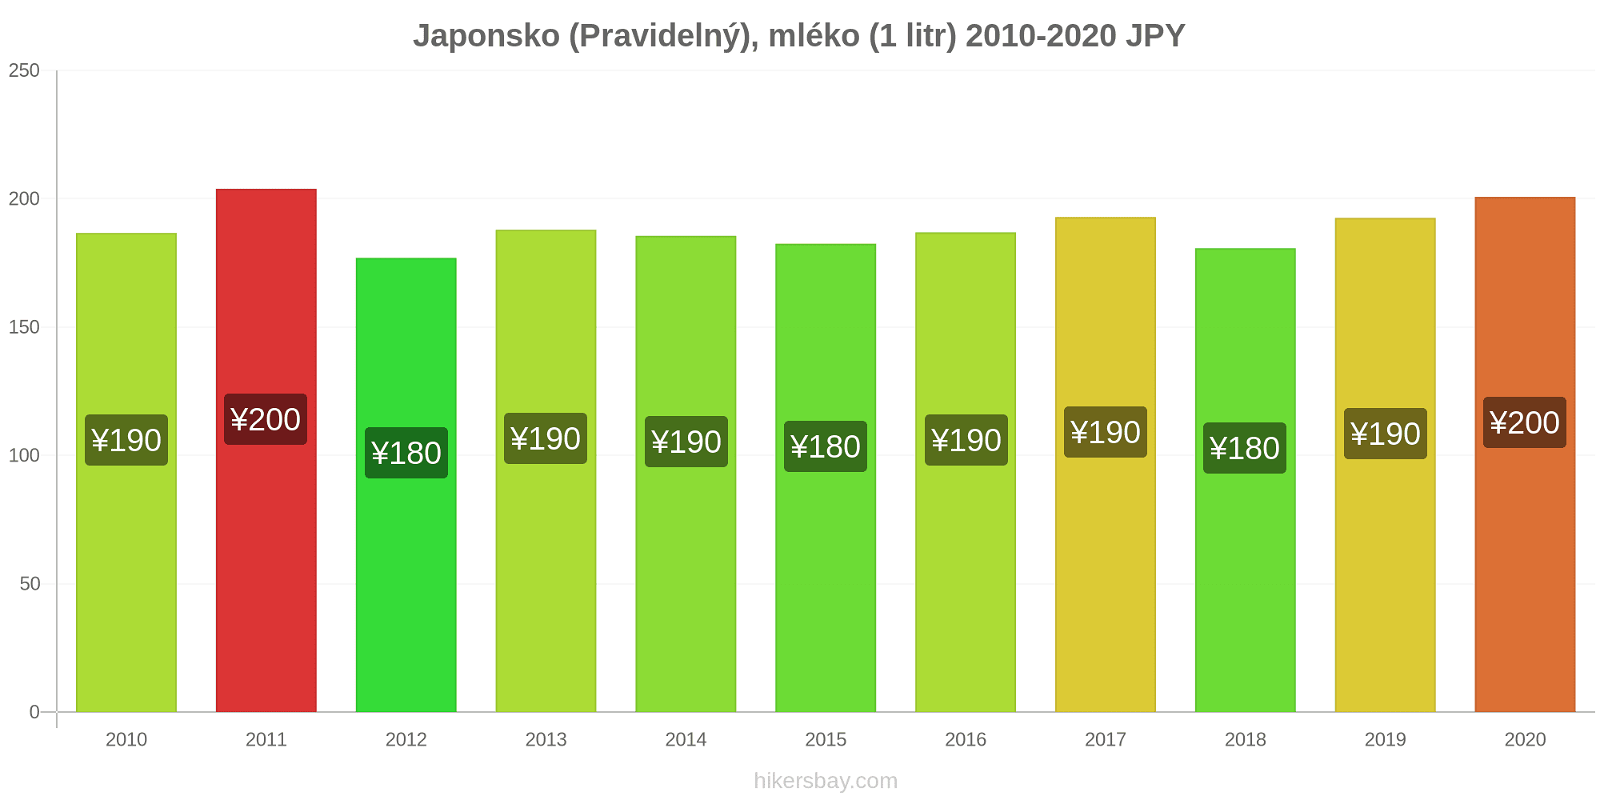 Japonsko změny cen (Pravidelný), mléko (1 litr) hikersbay.com